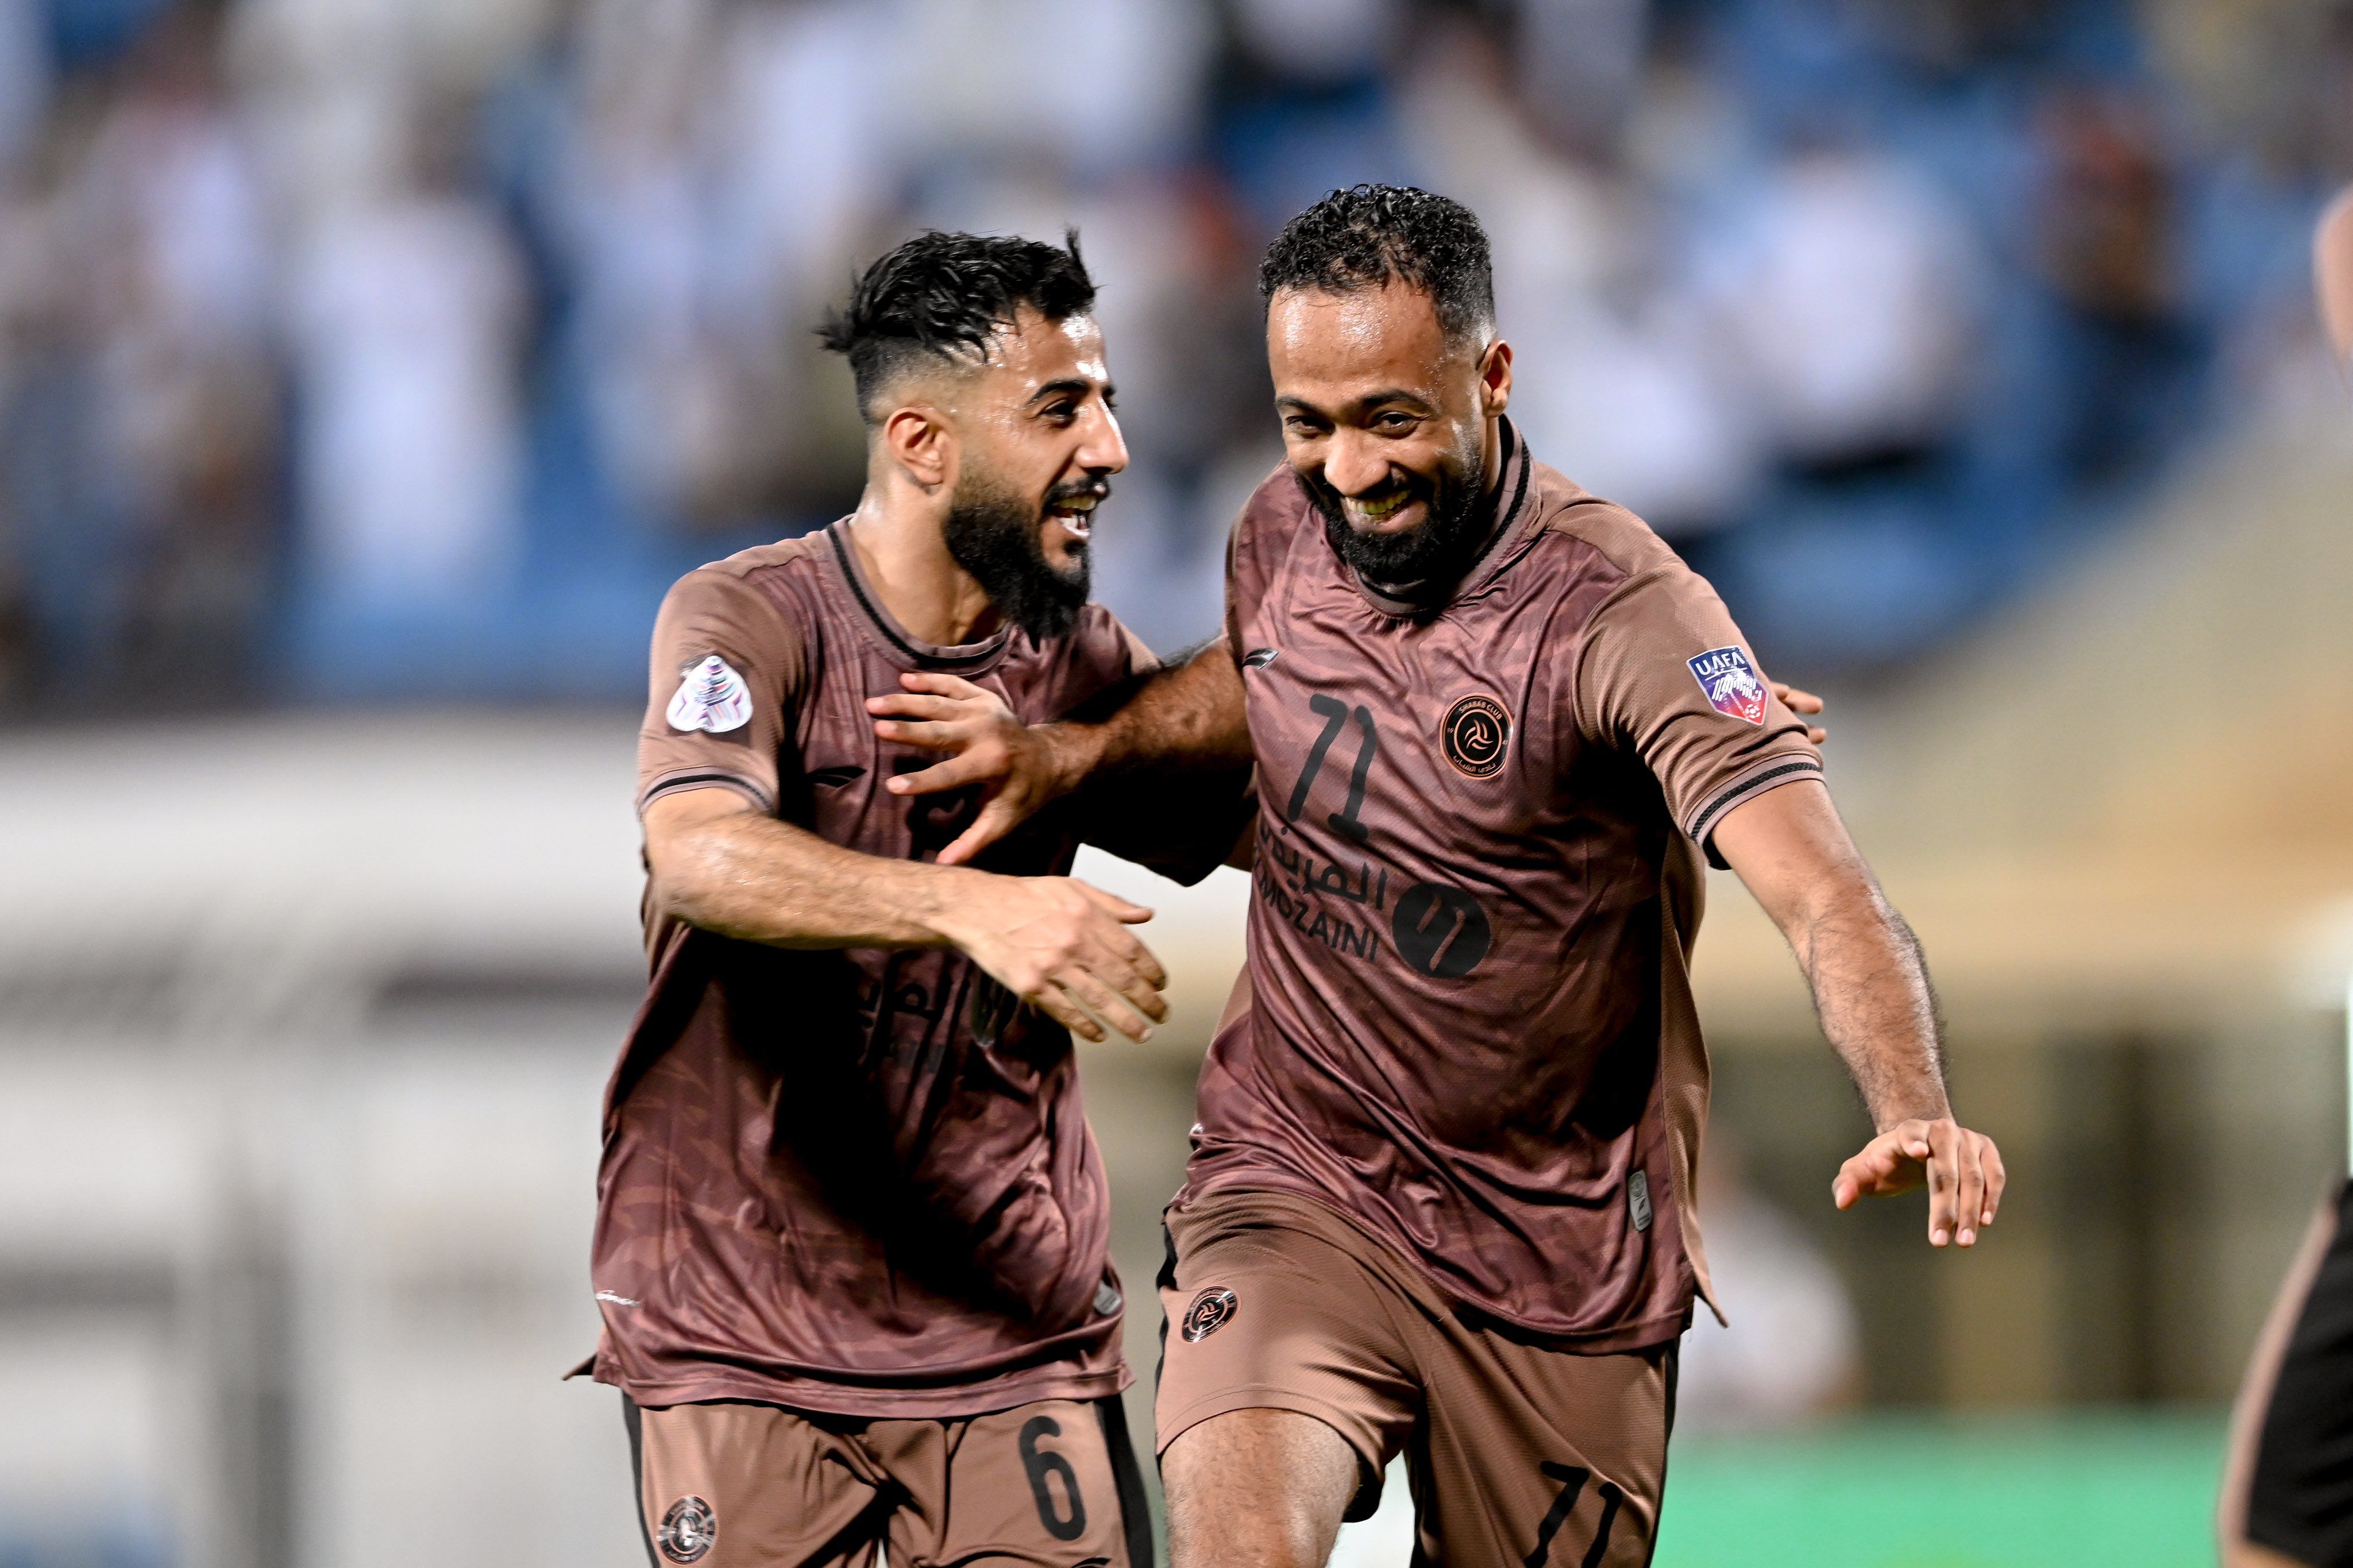 Al Shabab FC (Riyadh) - Wikipedia